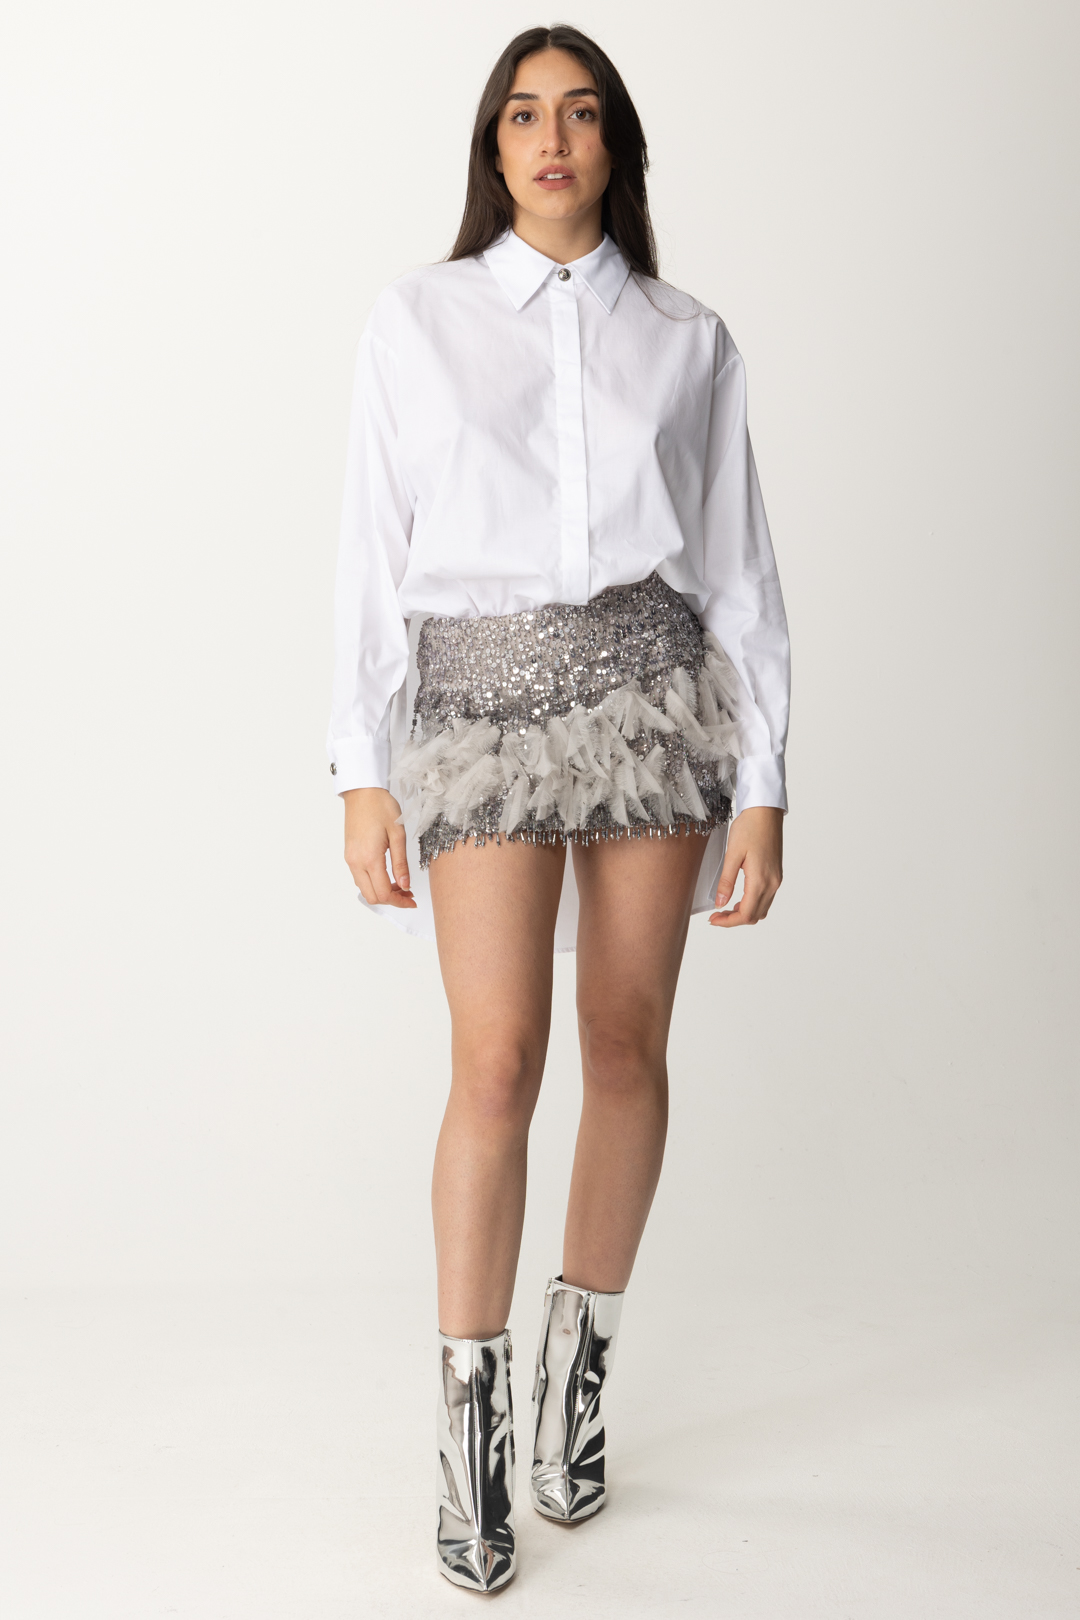 Anteprima: Elisabetta Franchi Miniabito con camicia e gonna ricamata Bianco/Perla